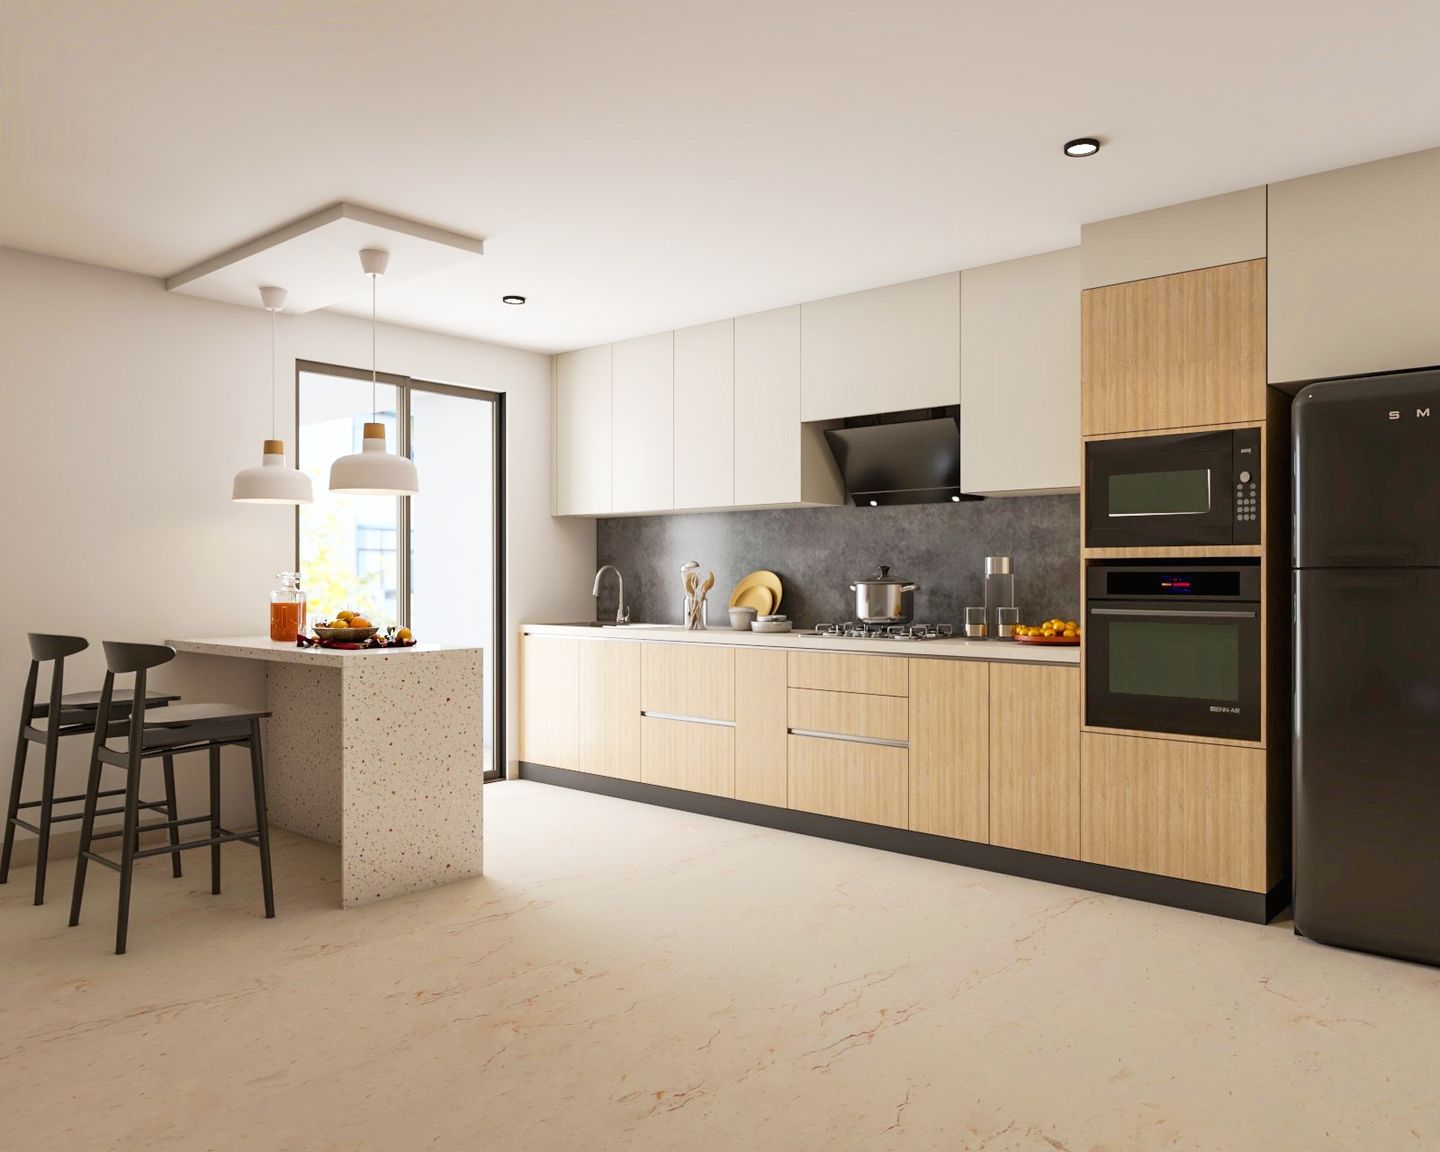 Straight Kitchen Design With A Quartz Countertop - Livspace